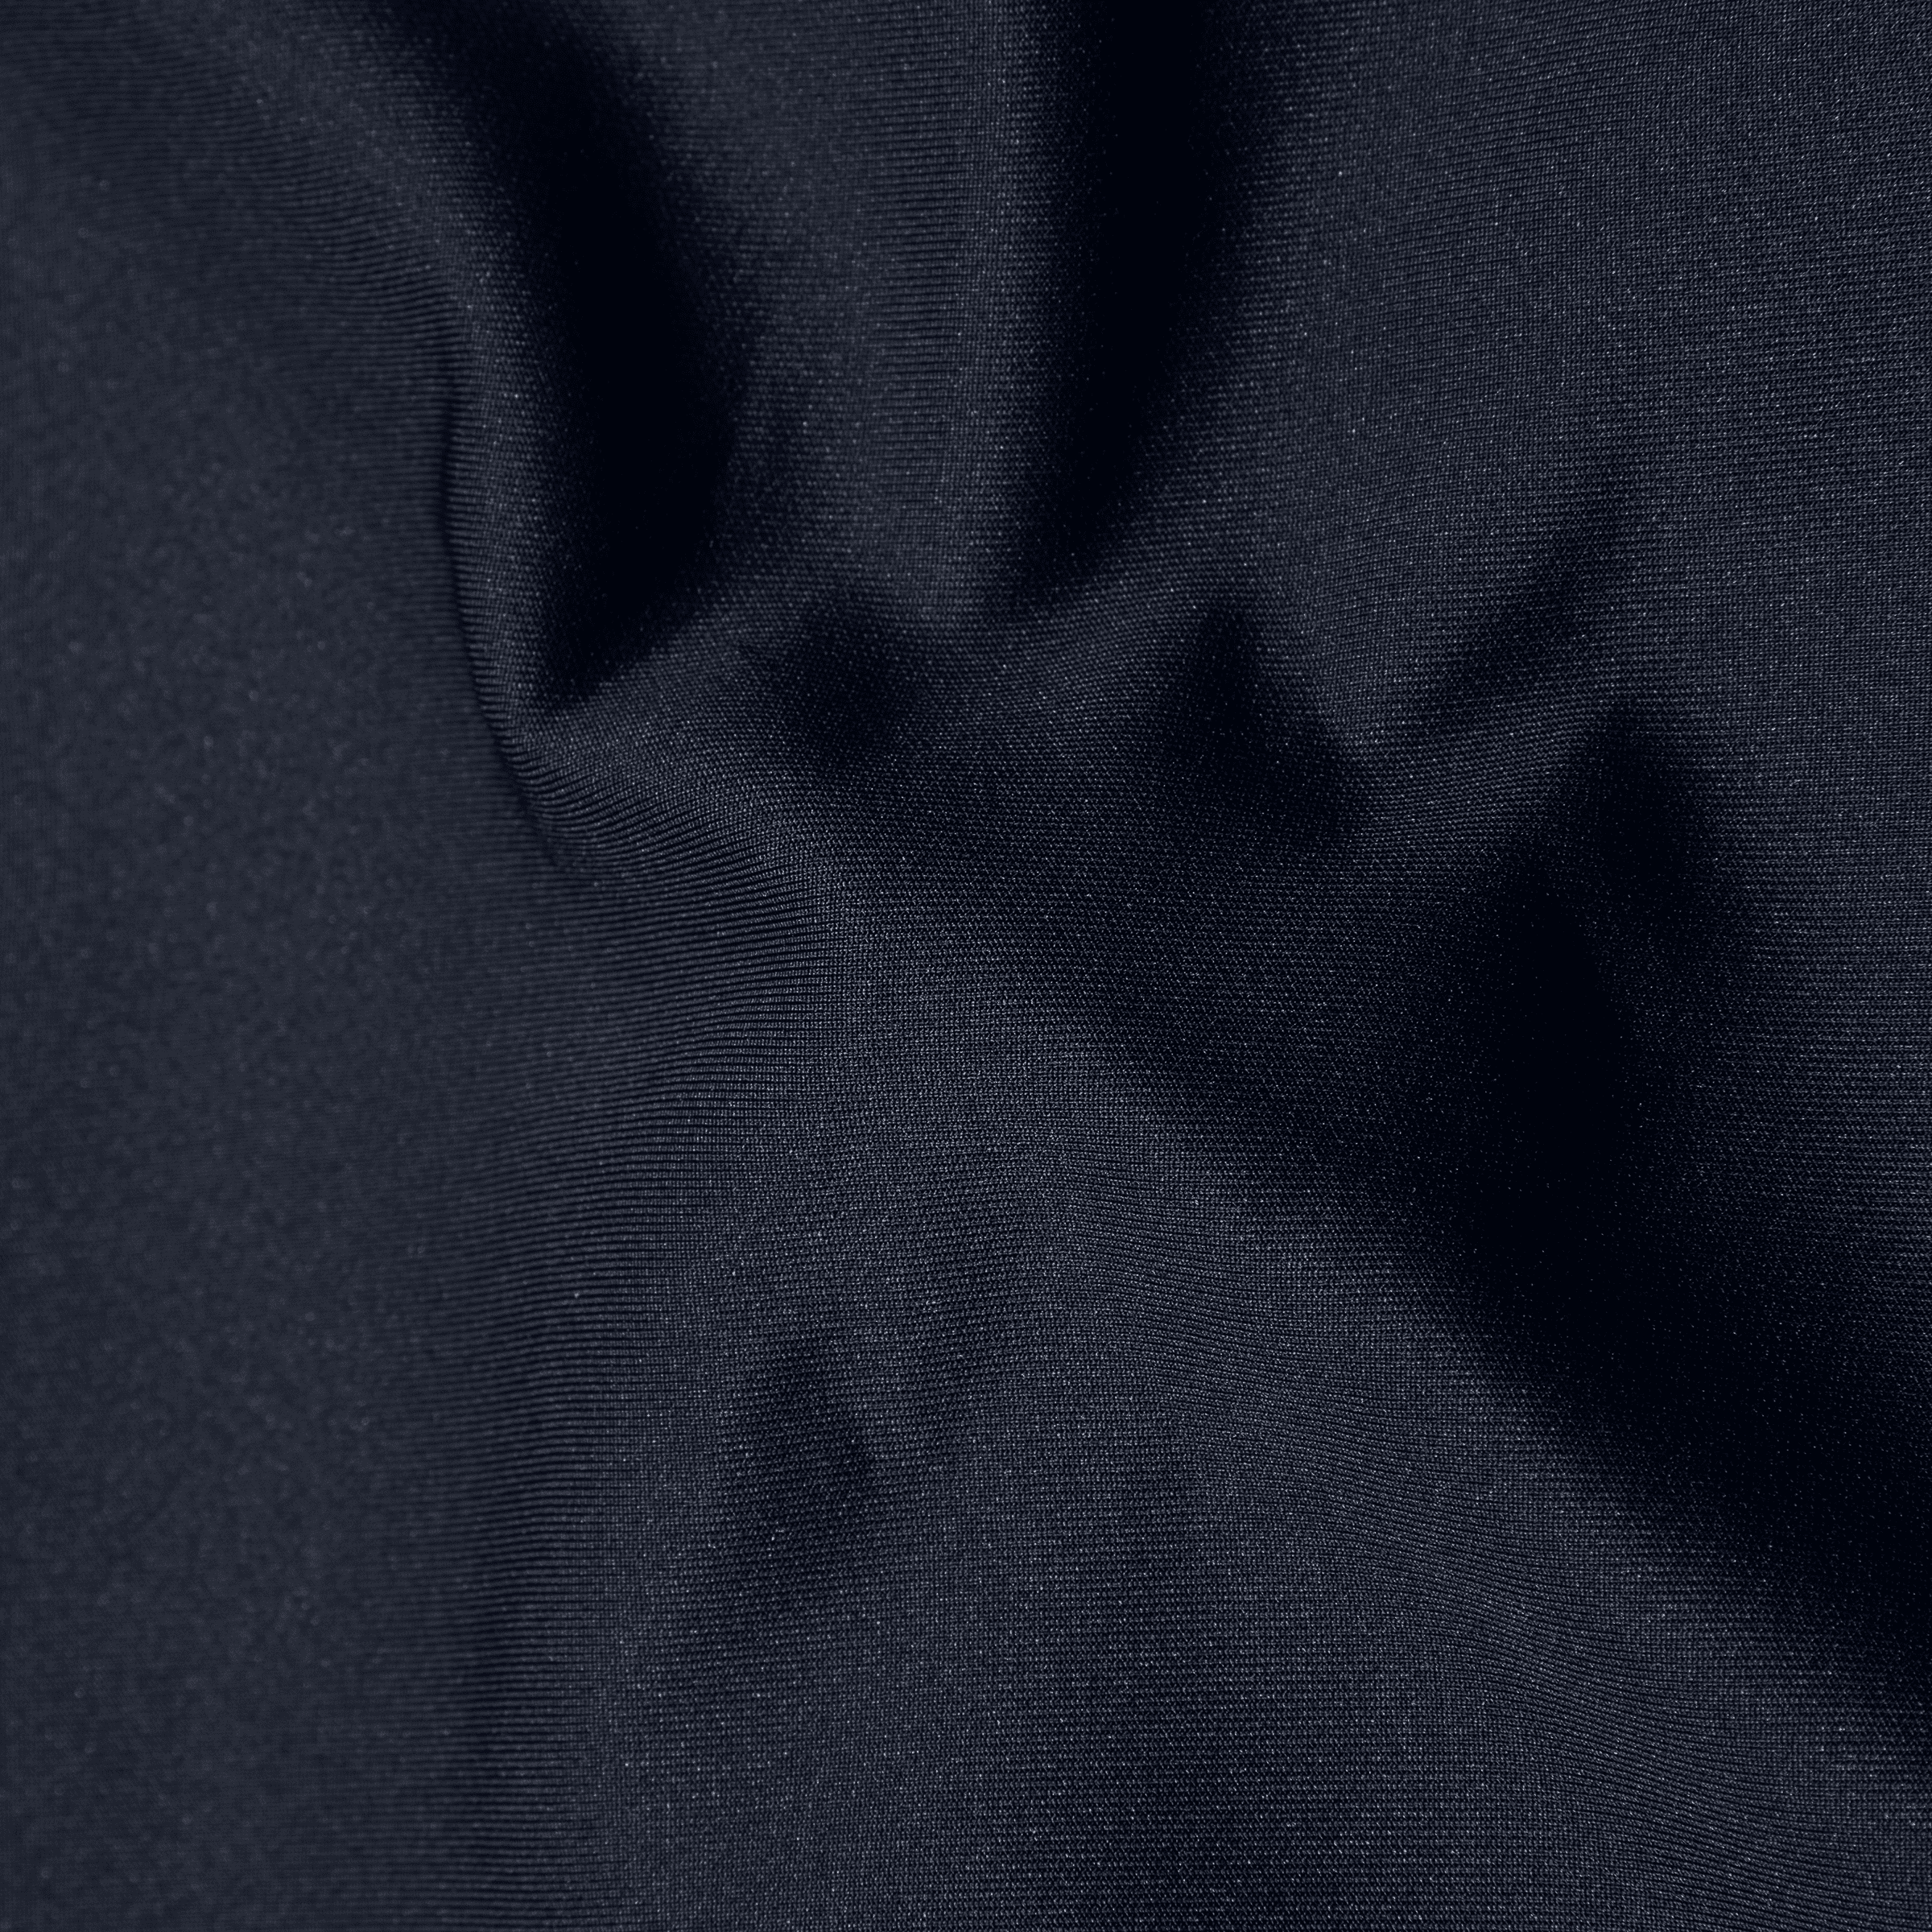 Scuba Jogger Navy close up fabric